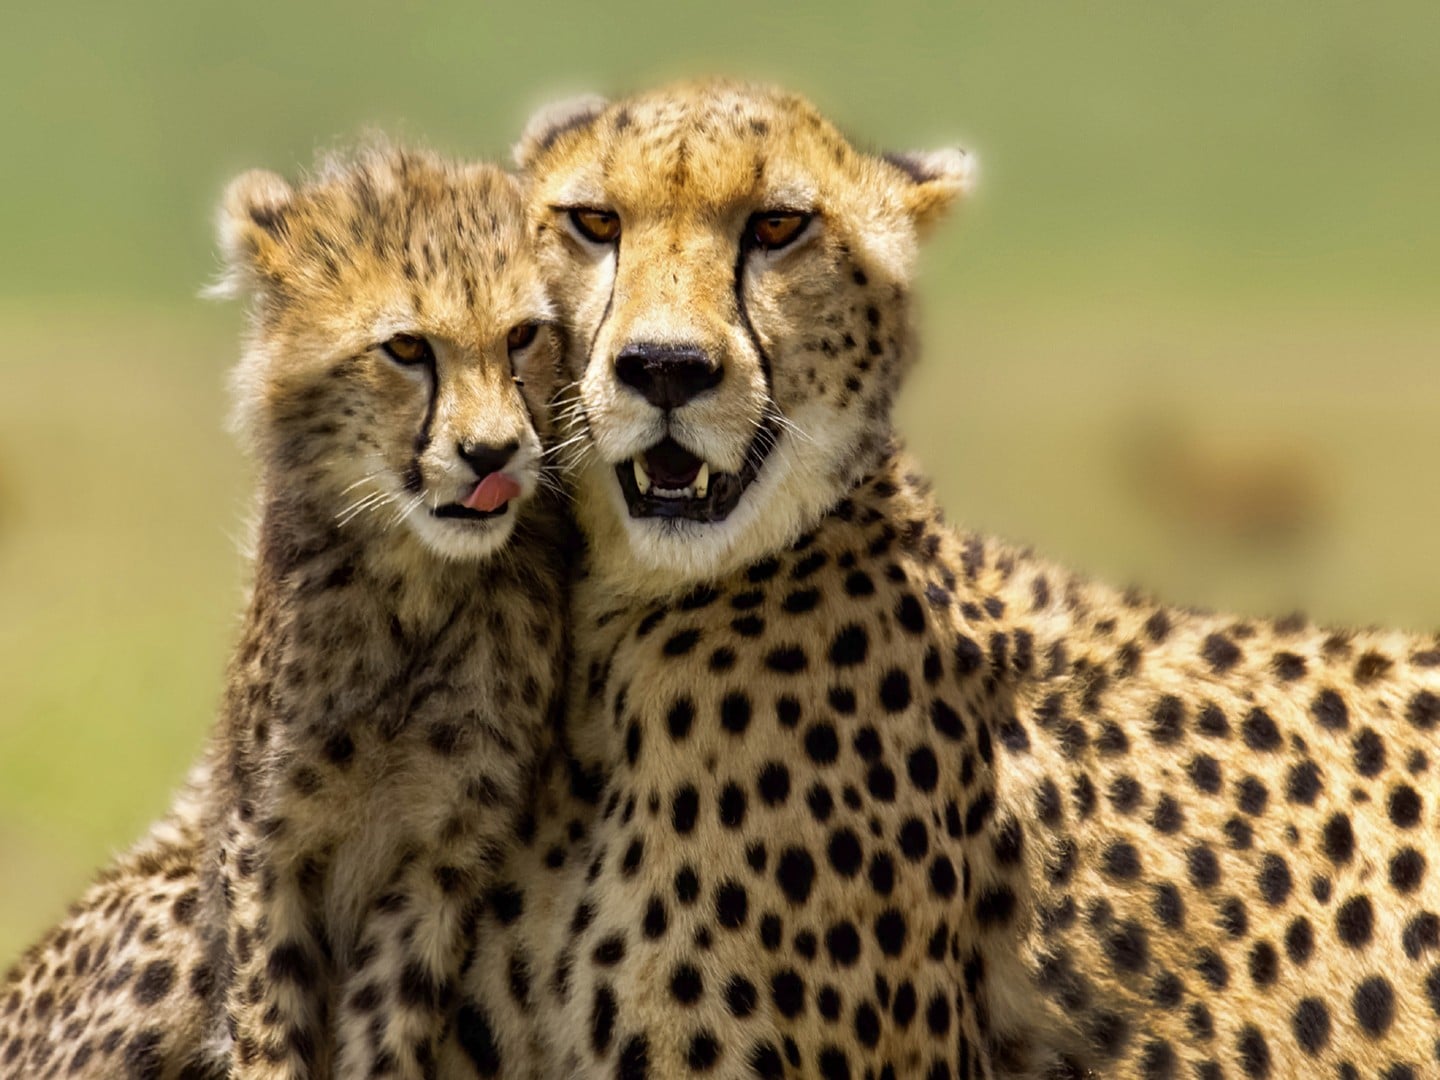 Leopardo vs guepardo ¿Quién es el más rápido?